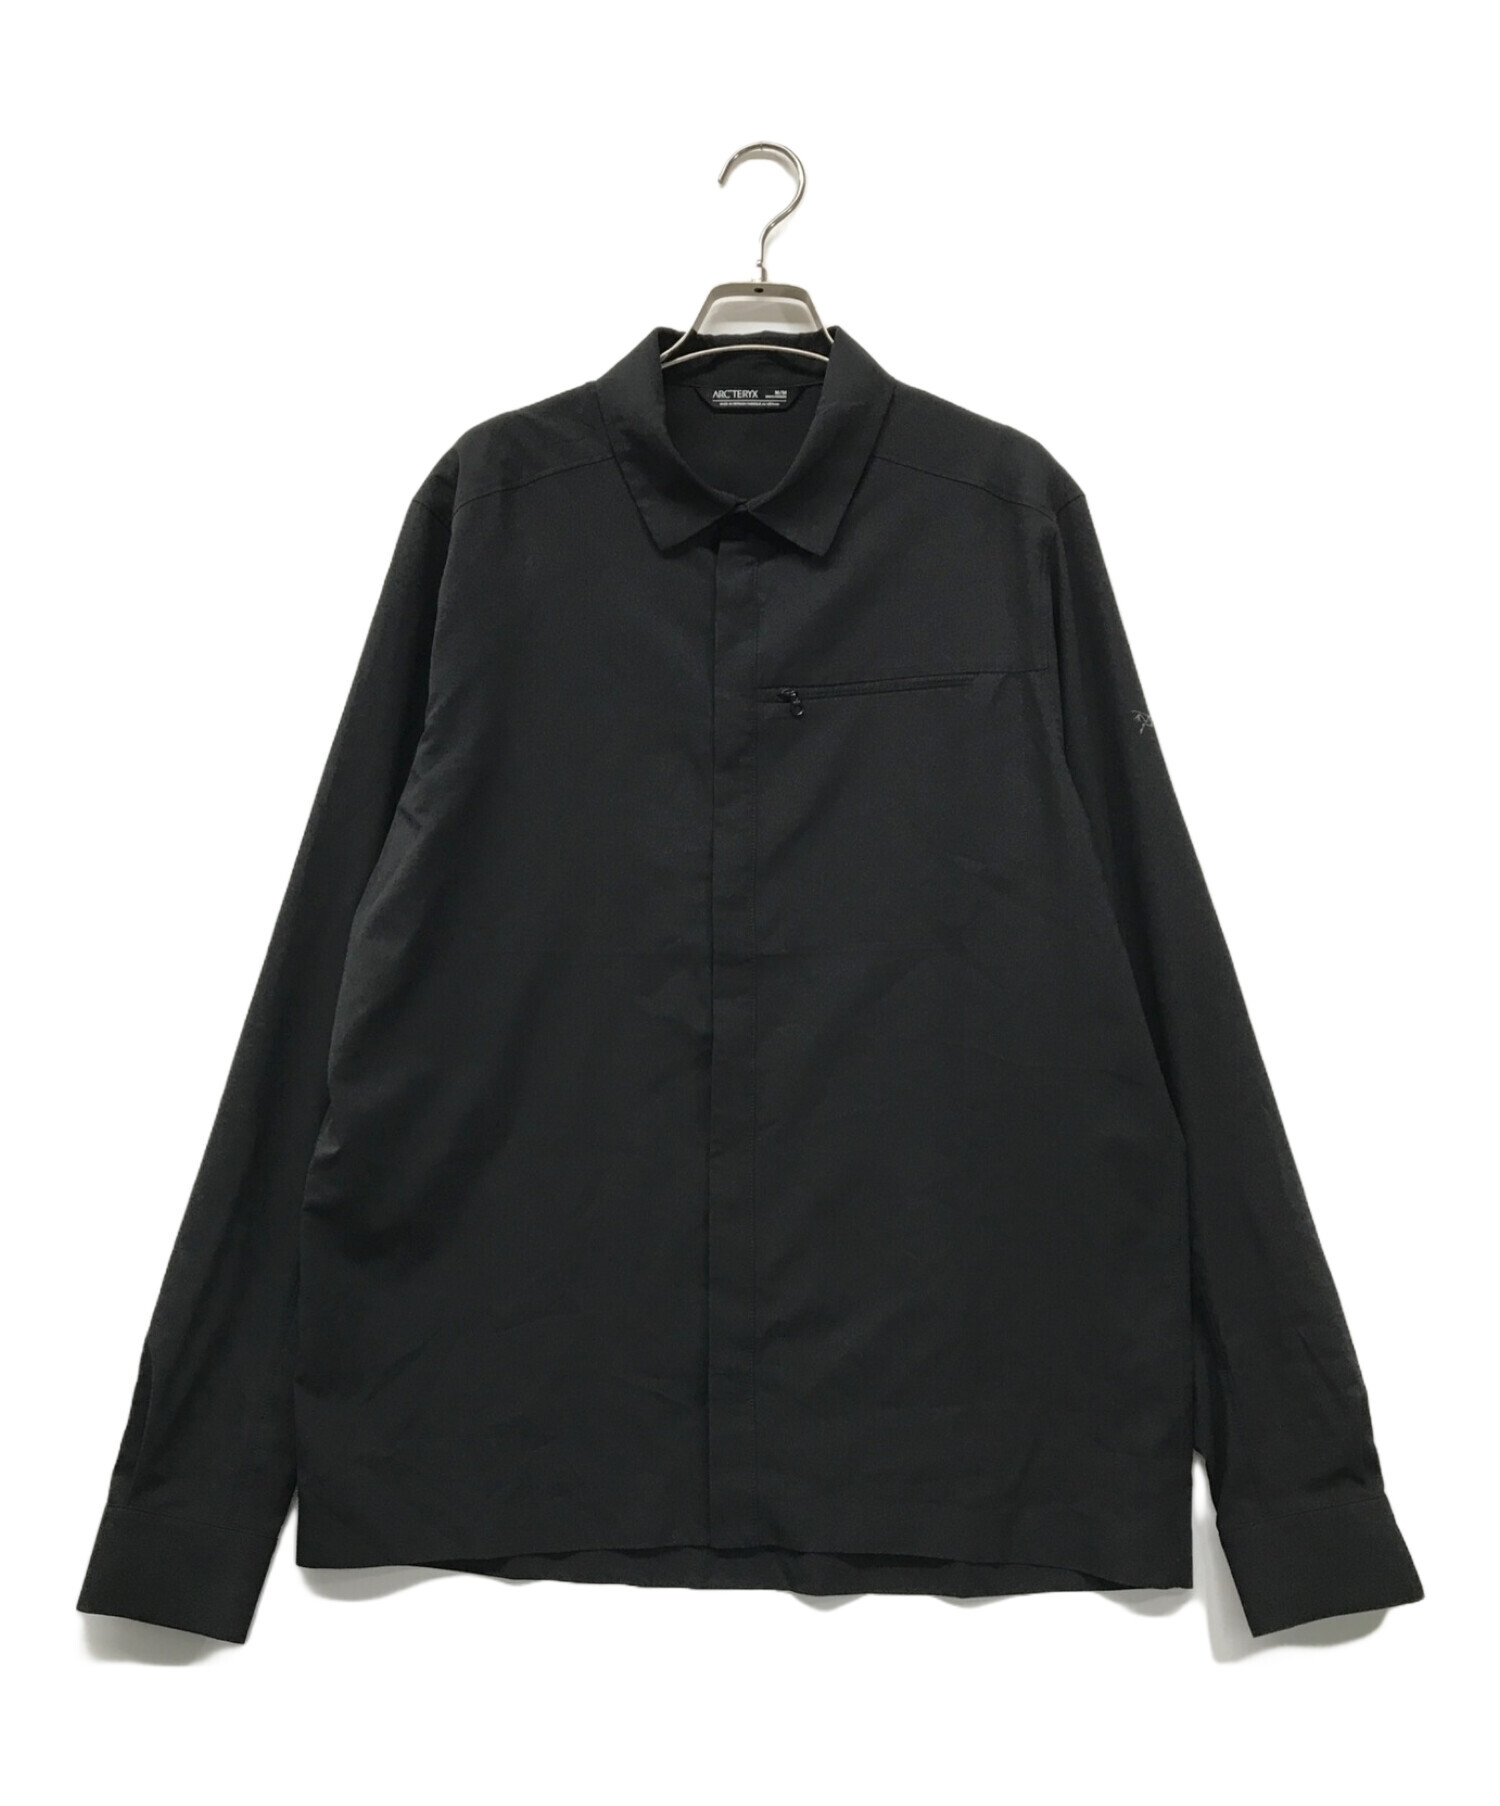 ARC'TERYX (アークテリクス) Skyline LS Shirt ARC'TERYX アークテリクス アーク ロングスリーブシャツ  スナップボタン ジップポケット 比翼 レギュラーカラー 141794 ブラック サイズ:M